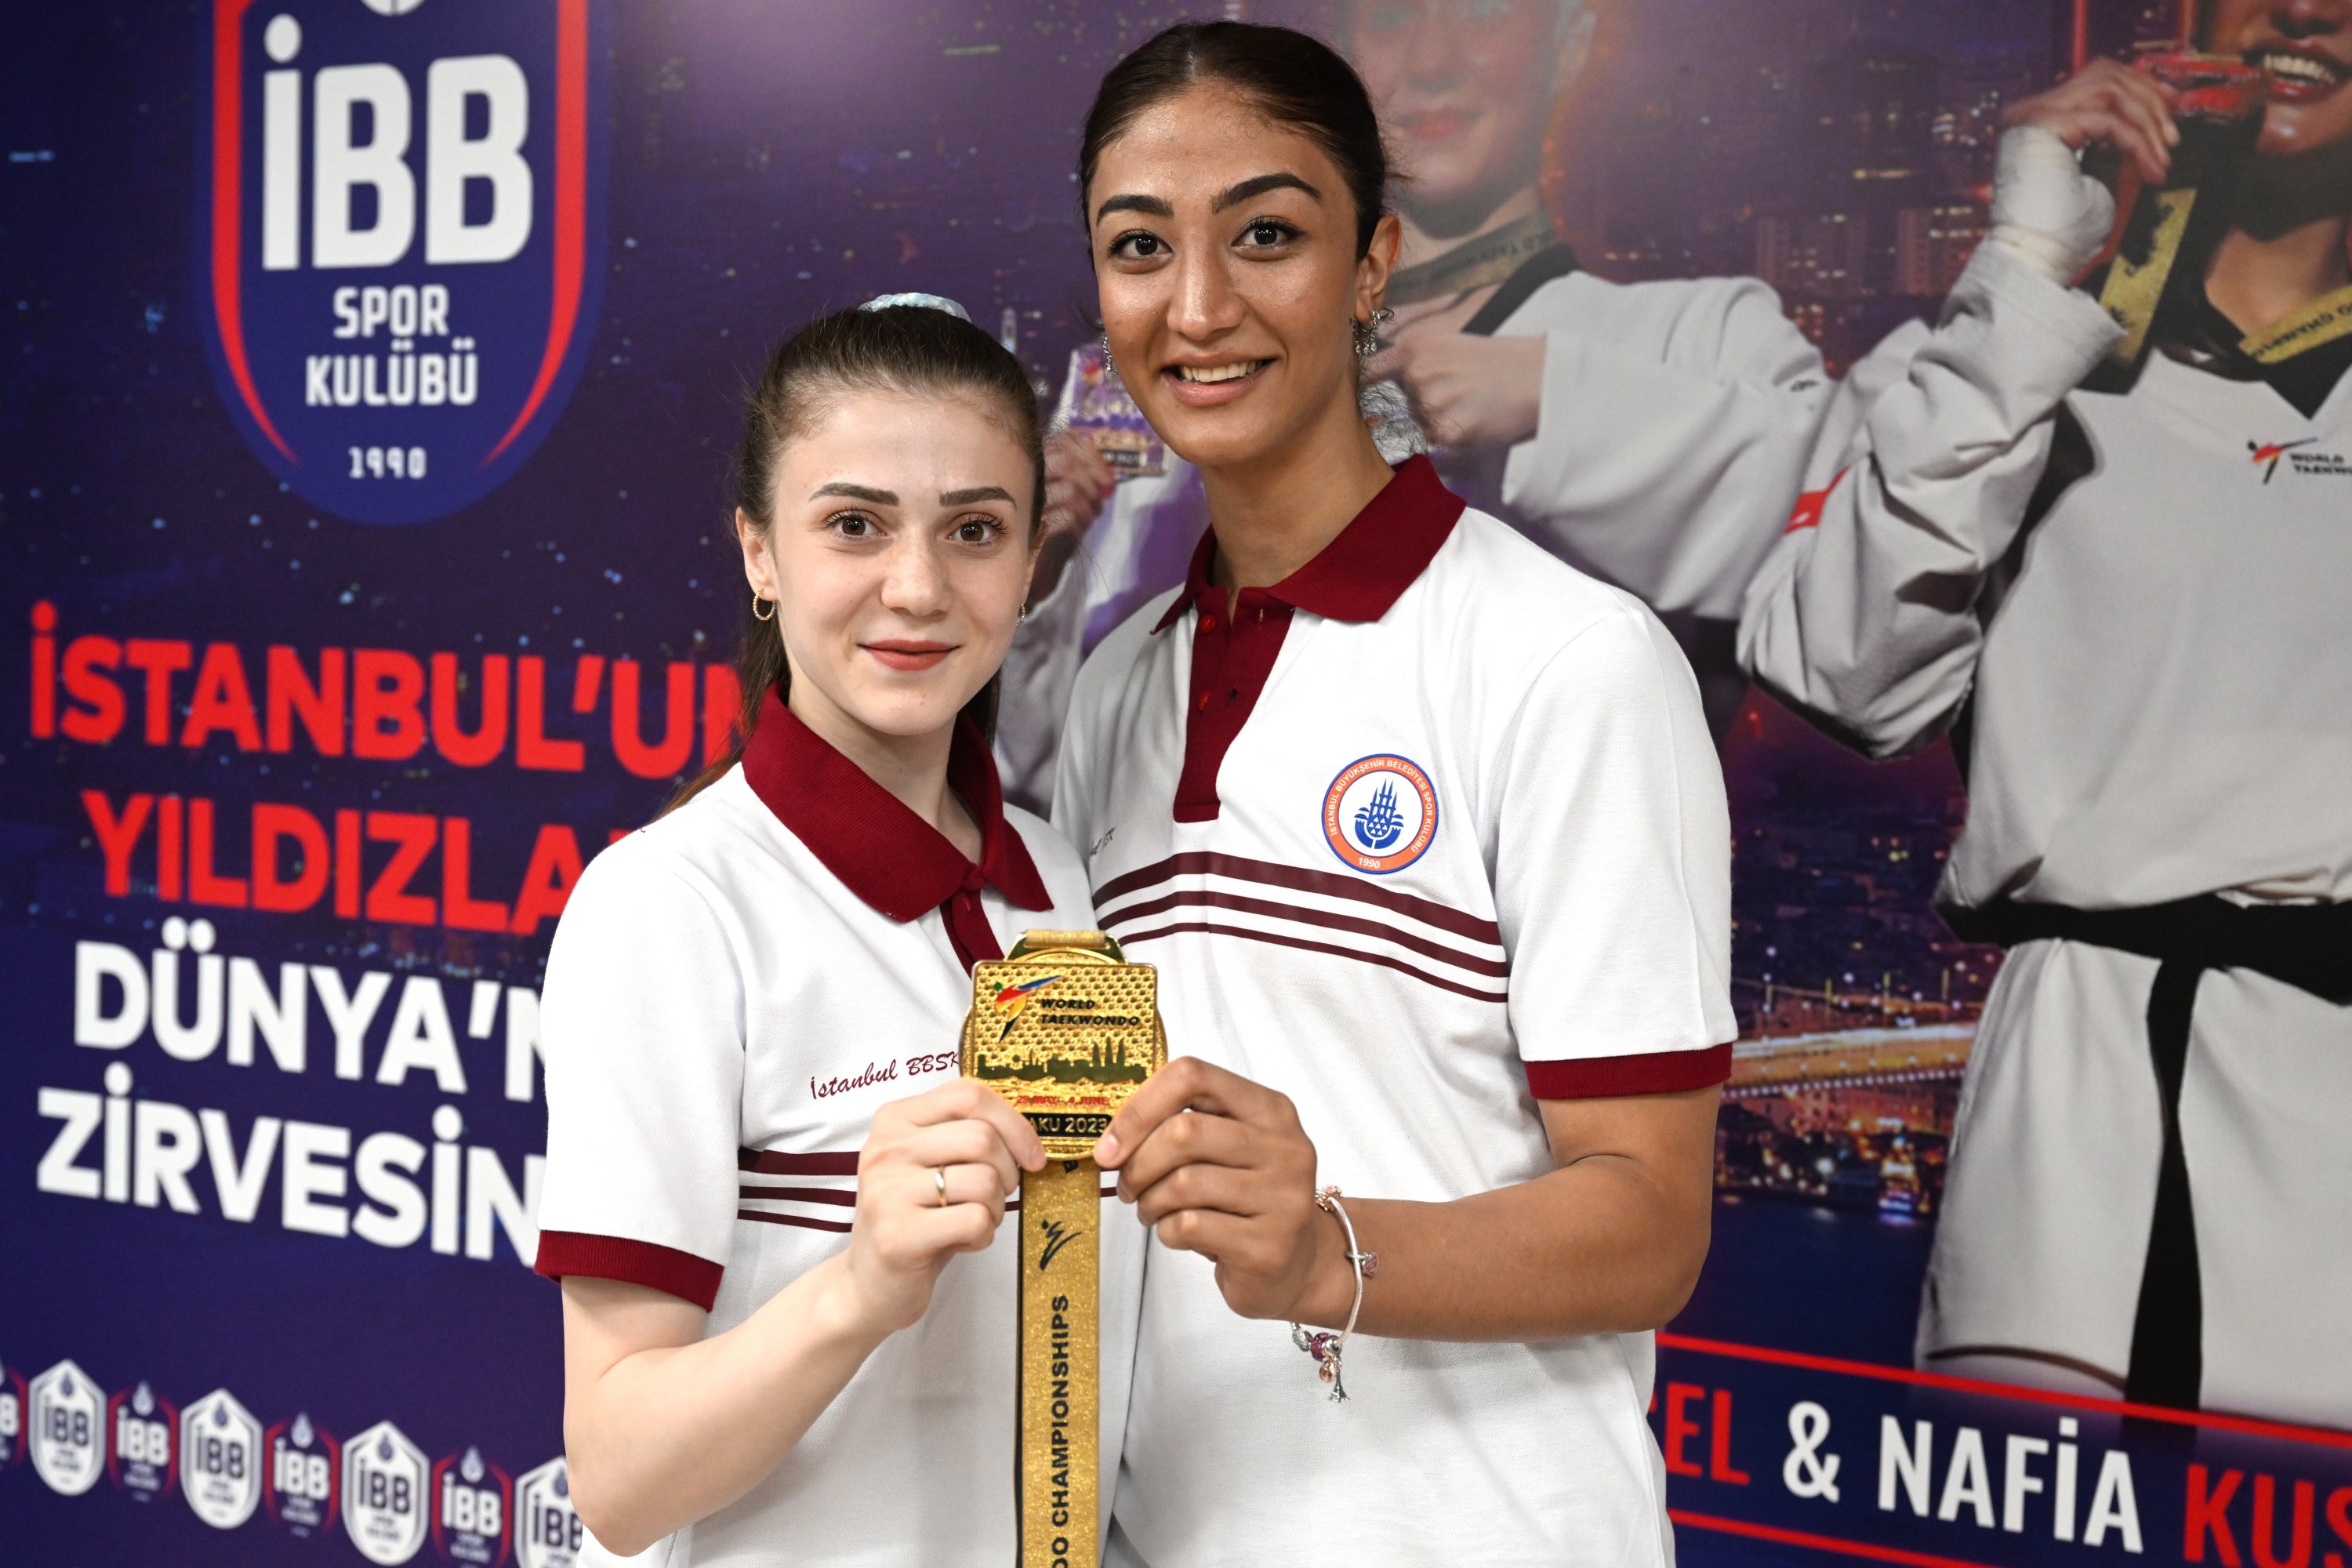 Atlet Klub Olahraga Kota Metropolitan Istanbul (IBBSK) pemenang penghargaan Kejuaraan Dunia Taekwondo Azerbaijan Merve Dinçel (kiri) dan Nafia Kuş berpose untuk foto di Kompleks Olahraga IBB Cebeci, Istanbul, Türkiye, 13 Juni 2023. (Foto AA)